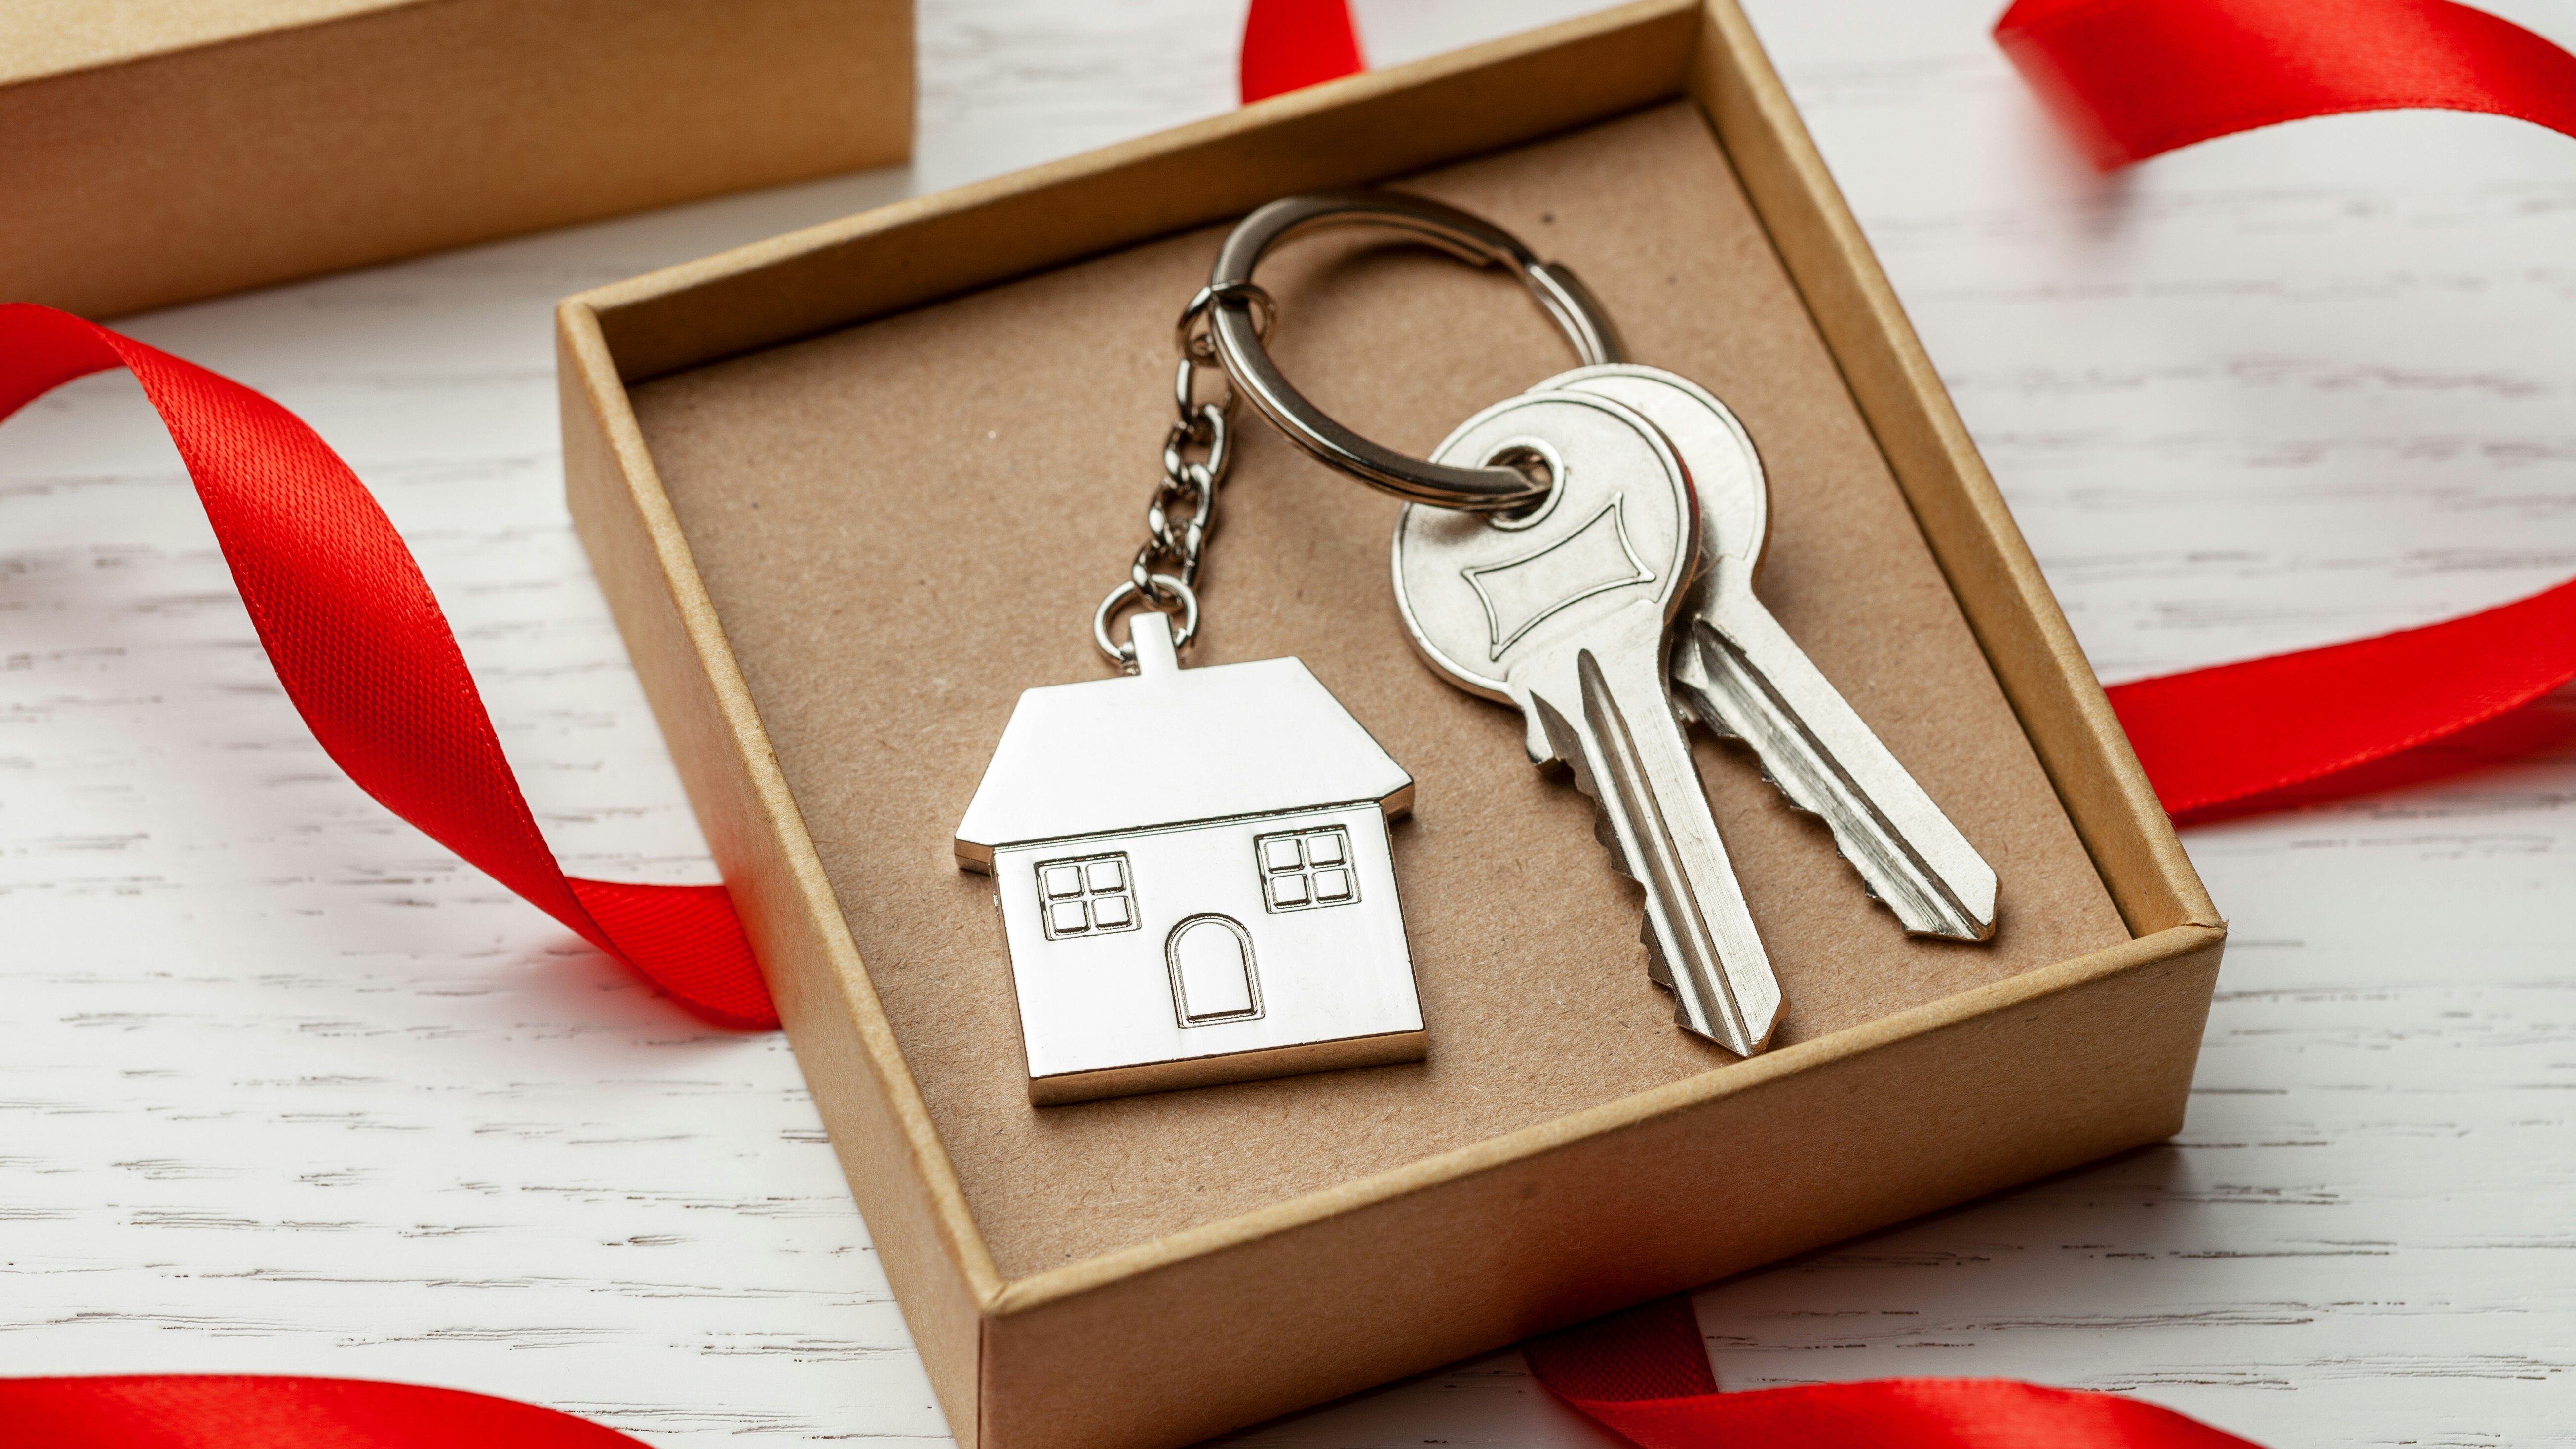 Lille gaveæske med et sæt nøgler samt en nøglering med et hus.